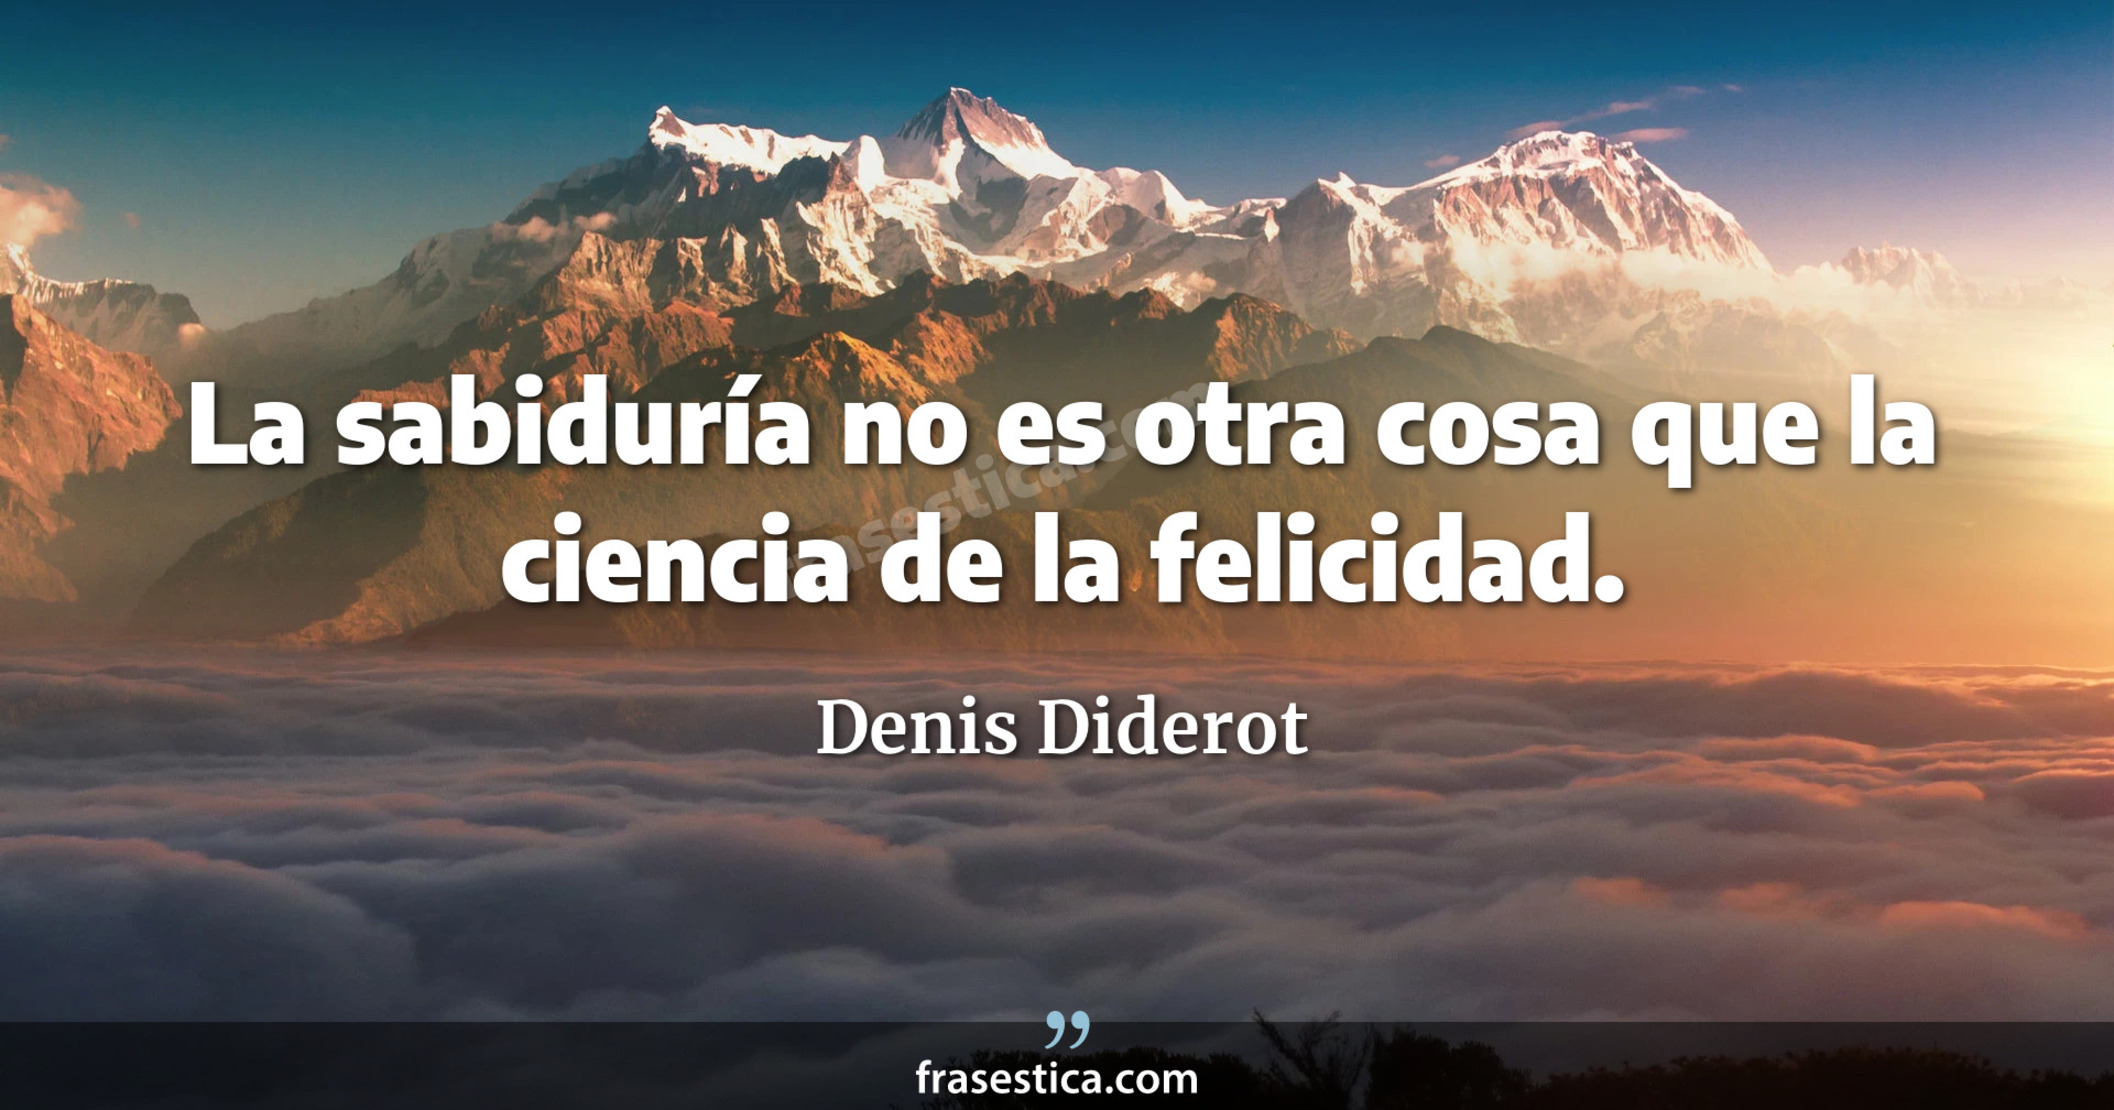 La sabiduría no es otra cosa que la ciencia de la felicidad. - Denis Diderot